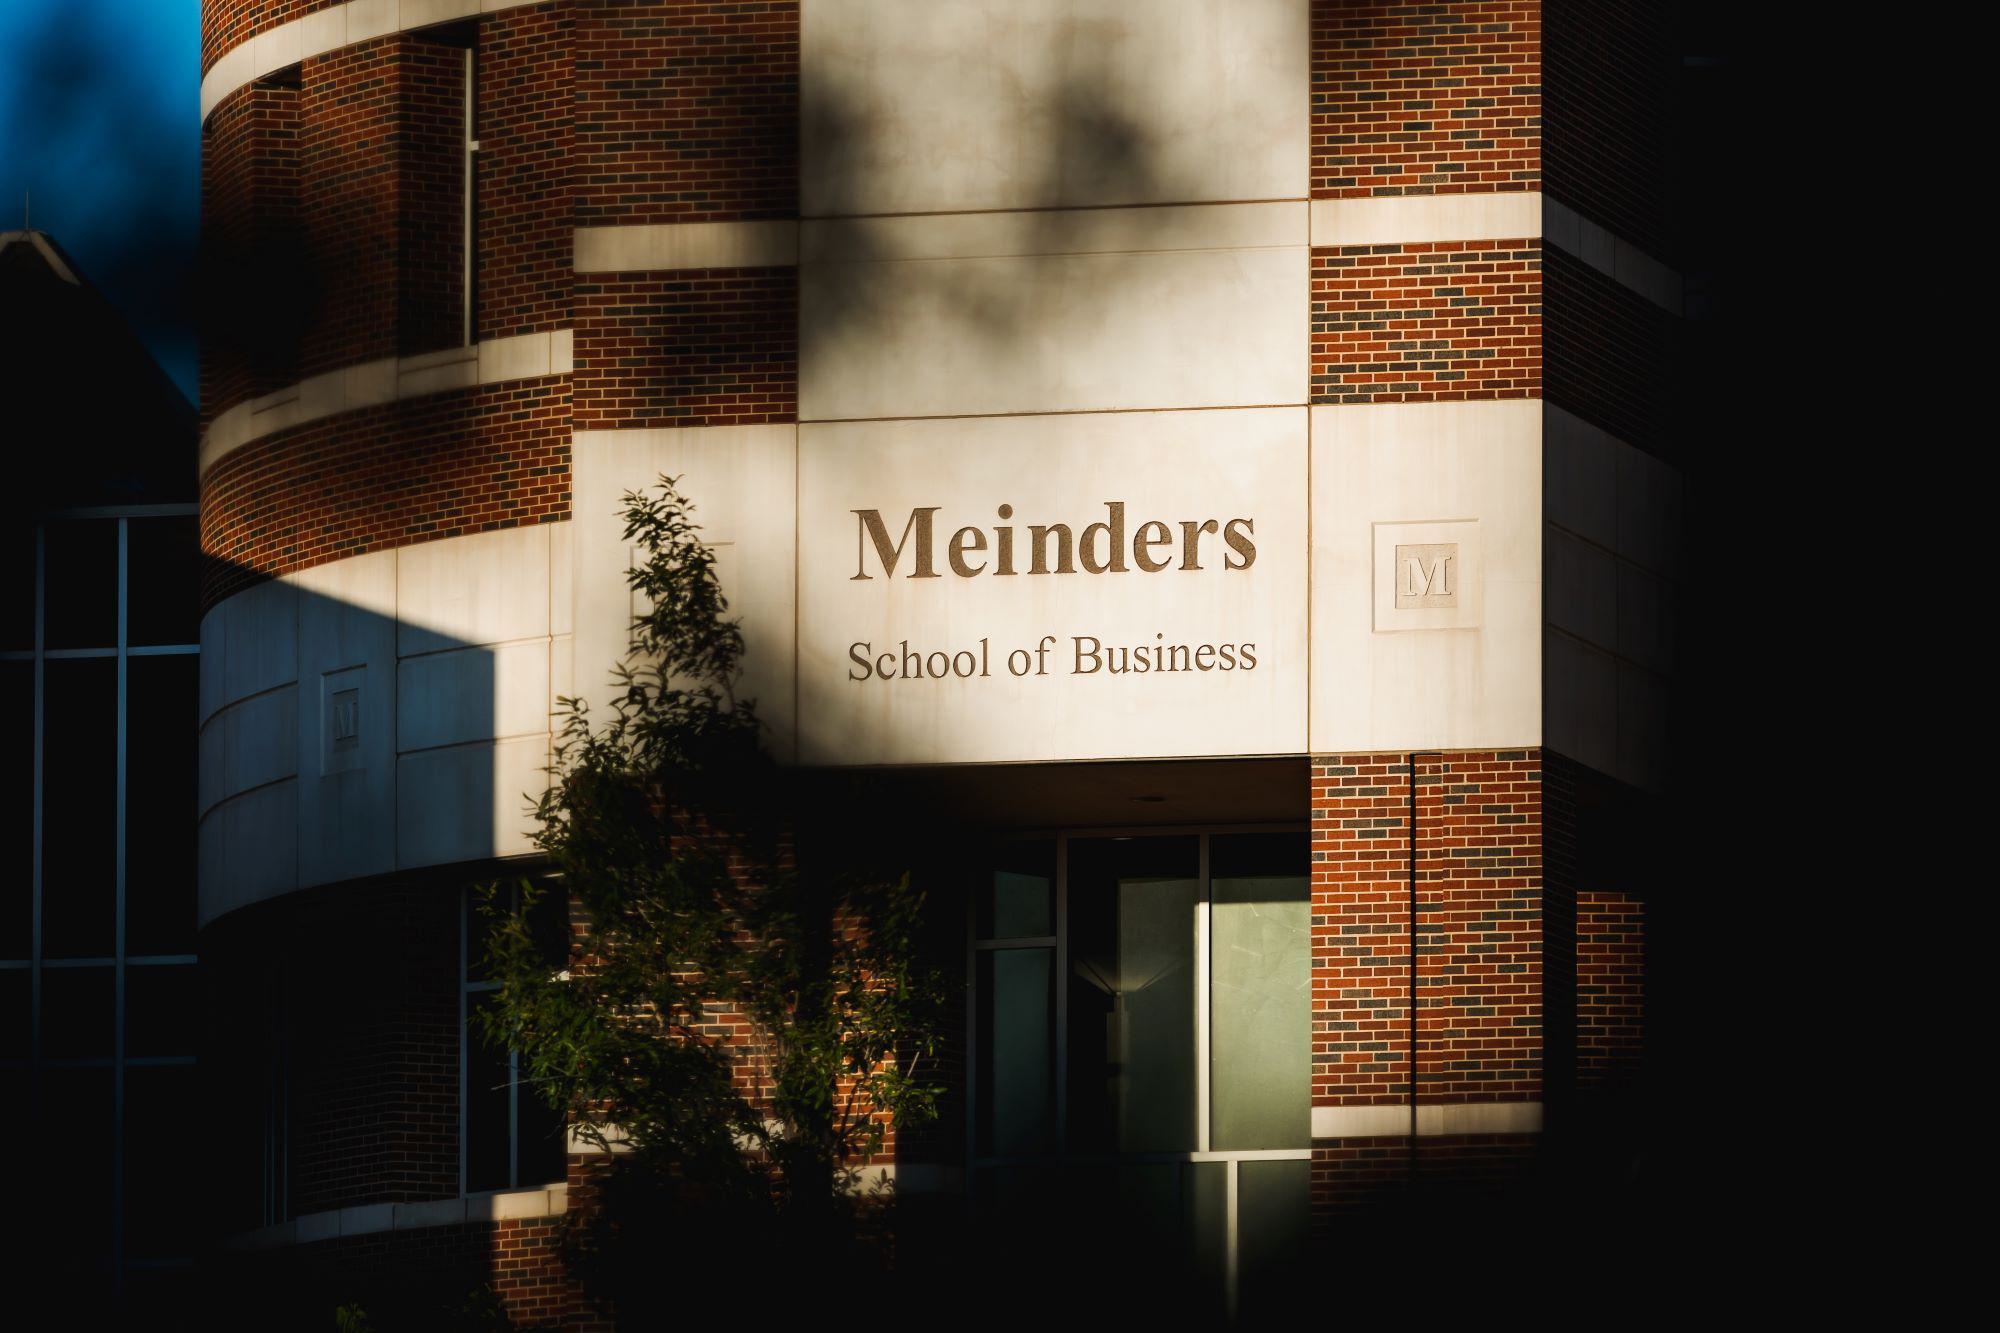 Meinders School of Business